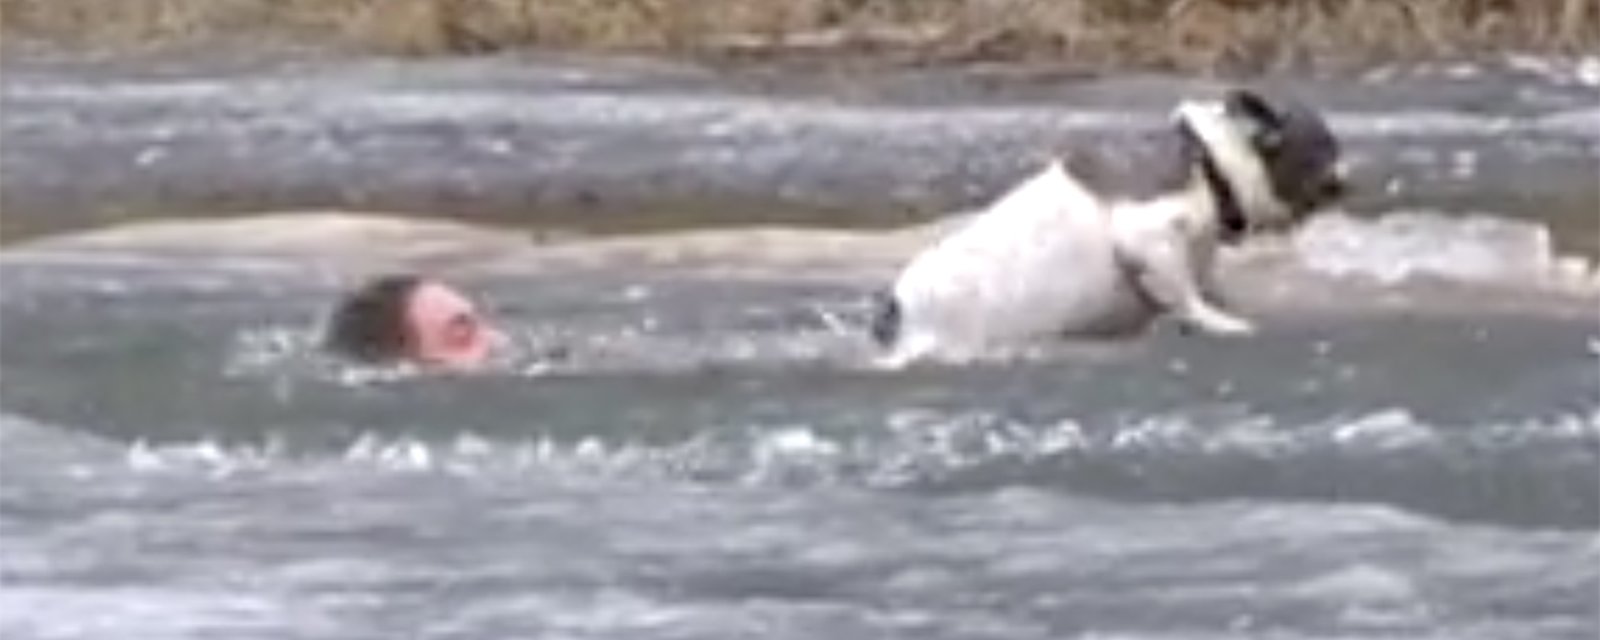 Un courageux Canadien tente de sauver son chien de la noyade | DERNIÈRE HEURE